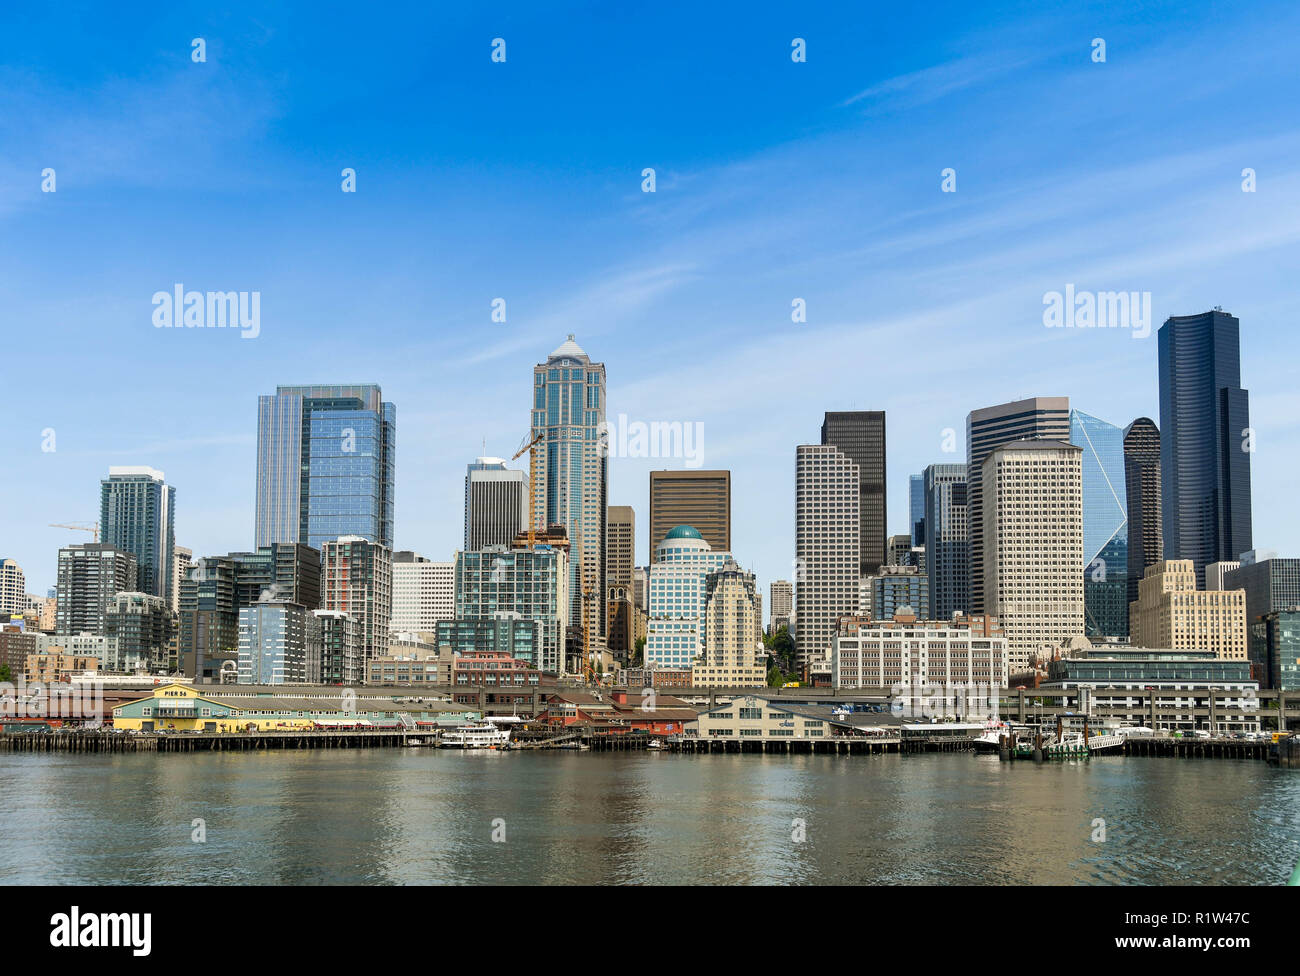 SEATTLE, Washington State, USA - JUNI 2018: Stadtbild von Wasser- und Bürogebäude in der Innenstadt von Seattle als vom Puget Sound gesehen. Stockfoto